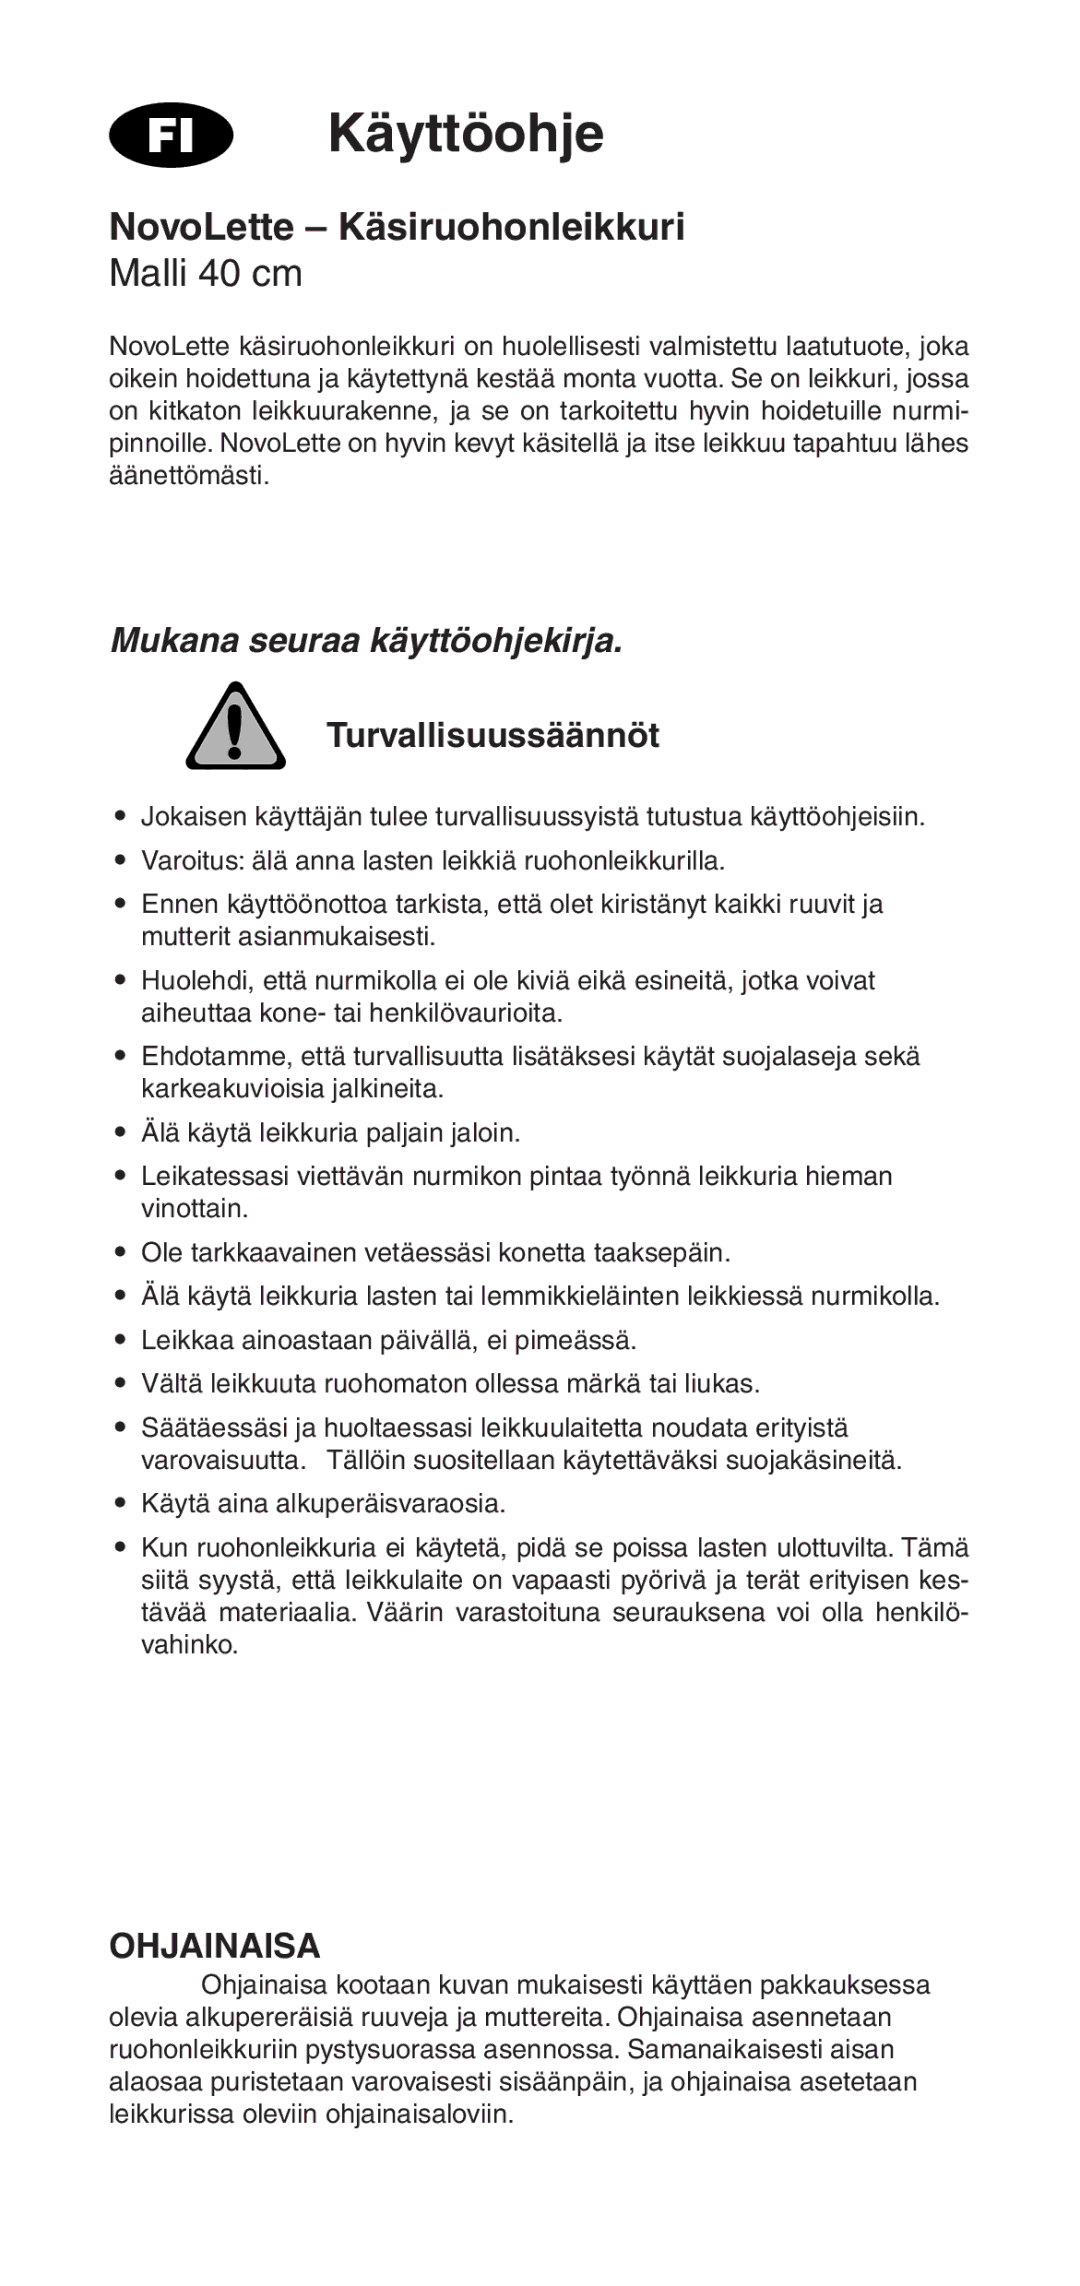 Husqvarna owner manual Käyttöohje, NovoLette Käsiruohonleikkuri, Malli 40 cm, Mukana seuraa käyttöohjekirja, Ohjainaisa 